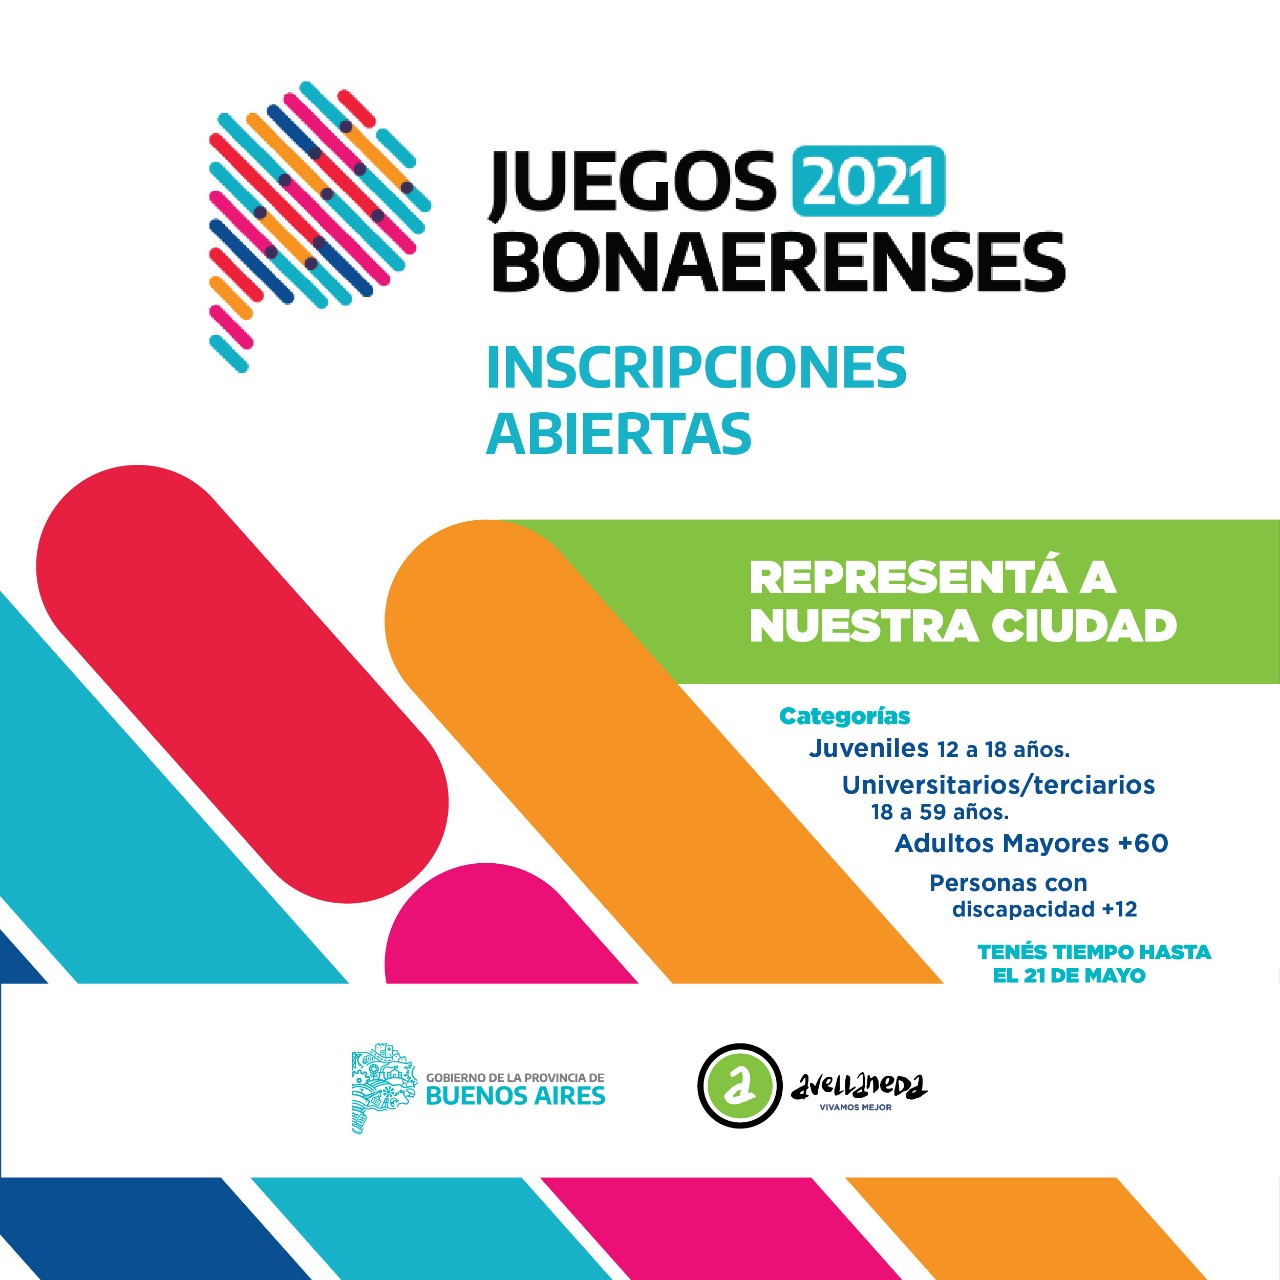 Avellaneda abre las inscripciones para participar de los Juegos Bonaerenses 2021